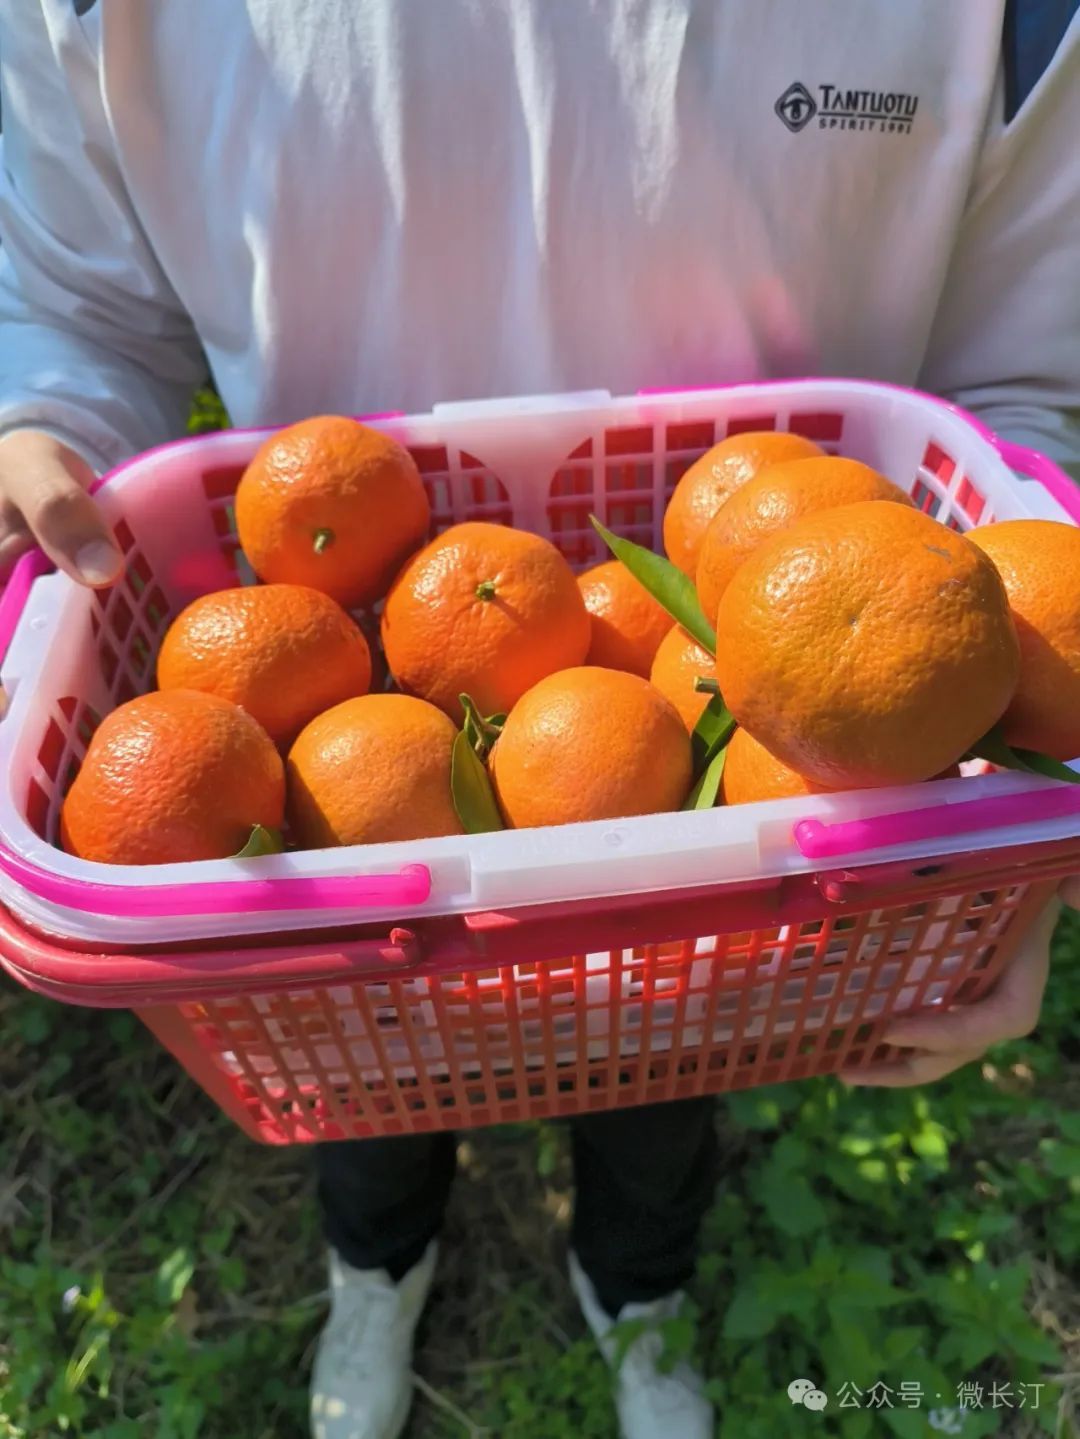 长汀县四都镇圭田村:做好柑橘产业文章 让世纪红长红